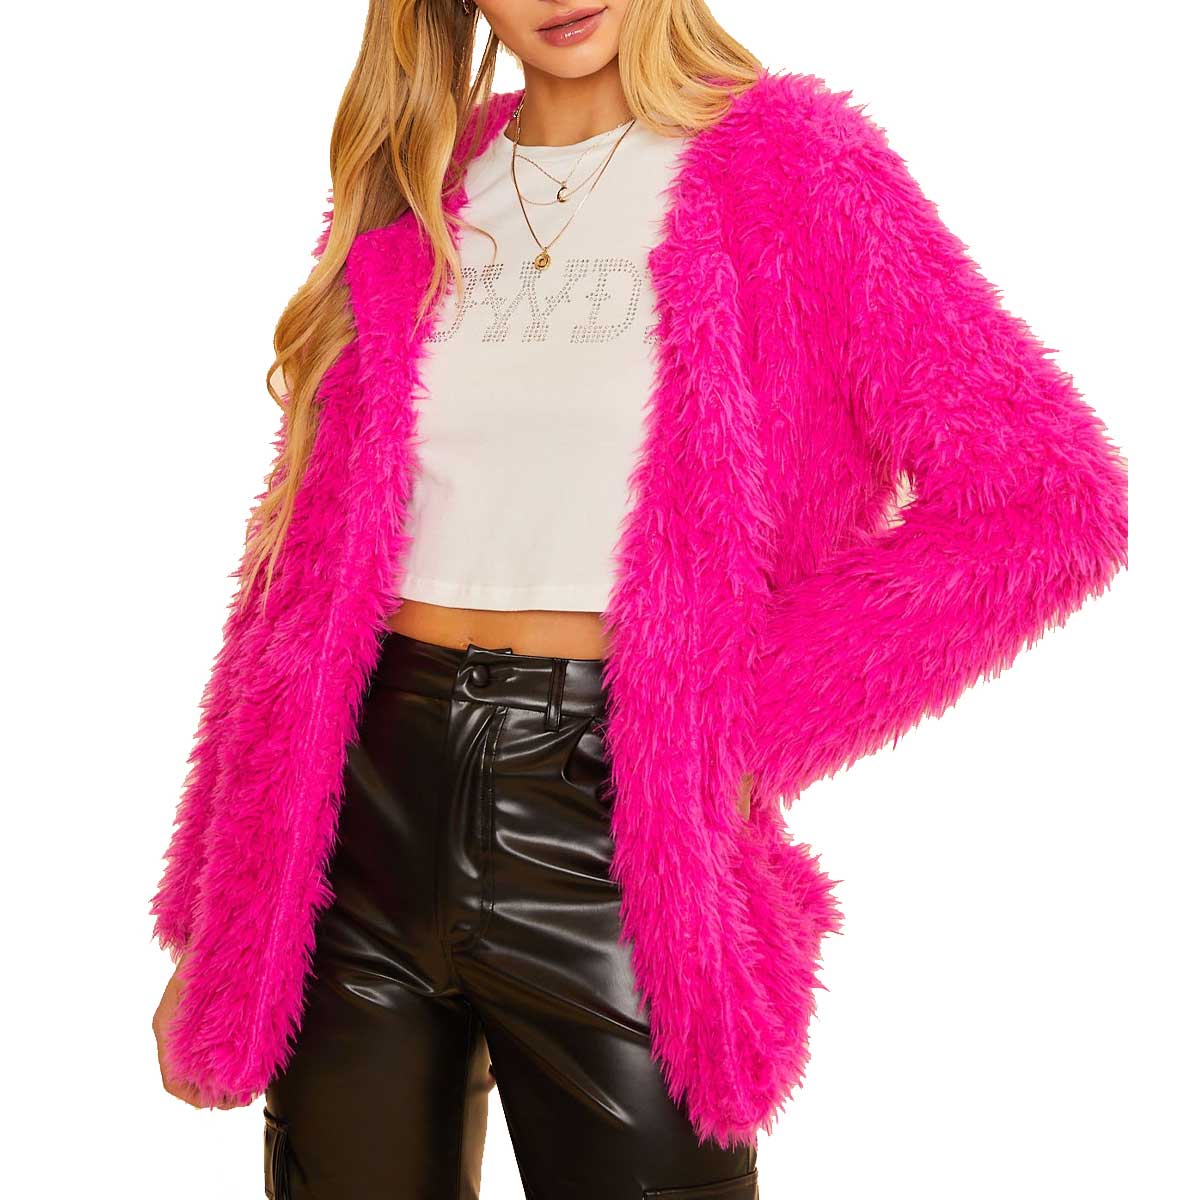 BaeVely Women's Faux Fur Cardigan Sweater - Fuchsia – Lazy J Ranch Wear ...